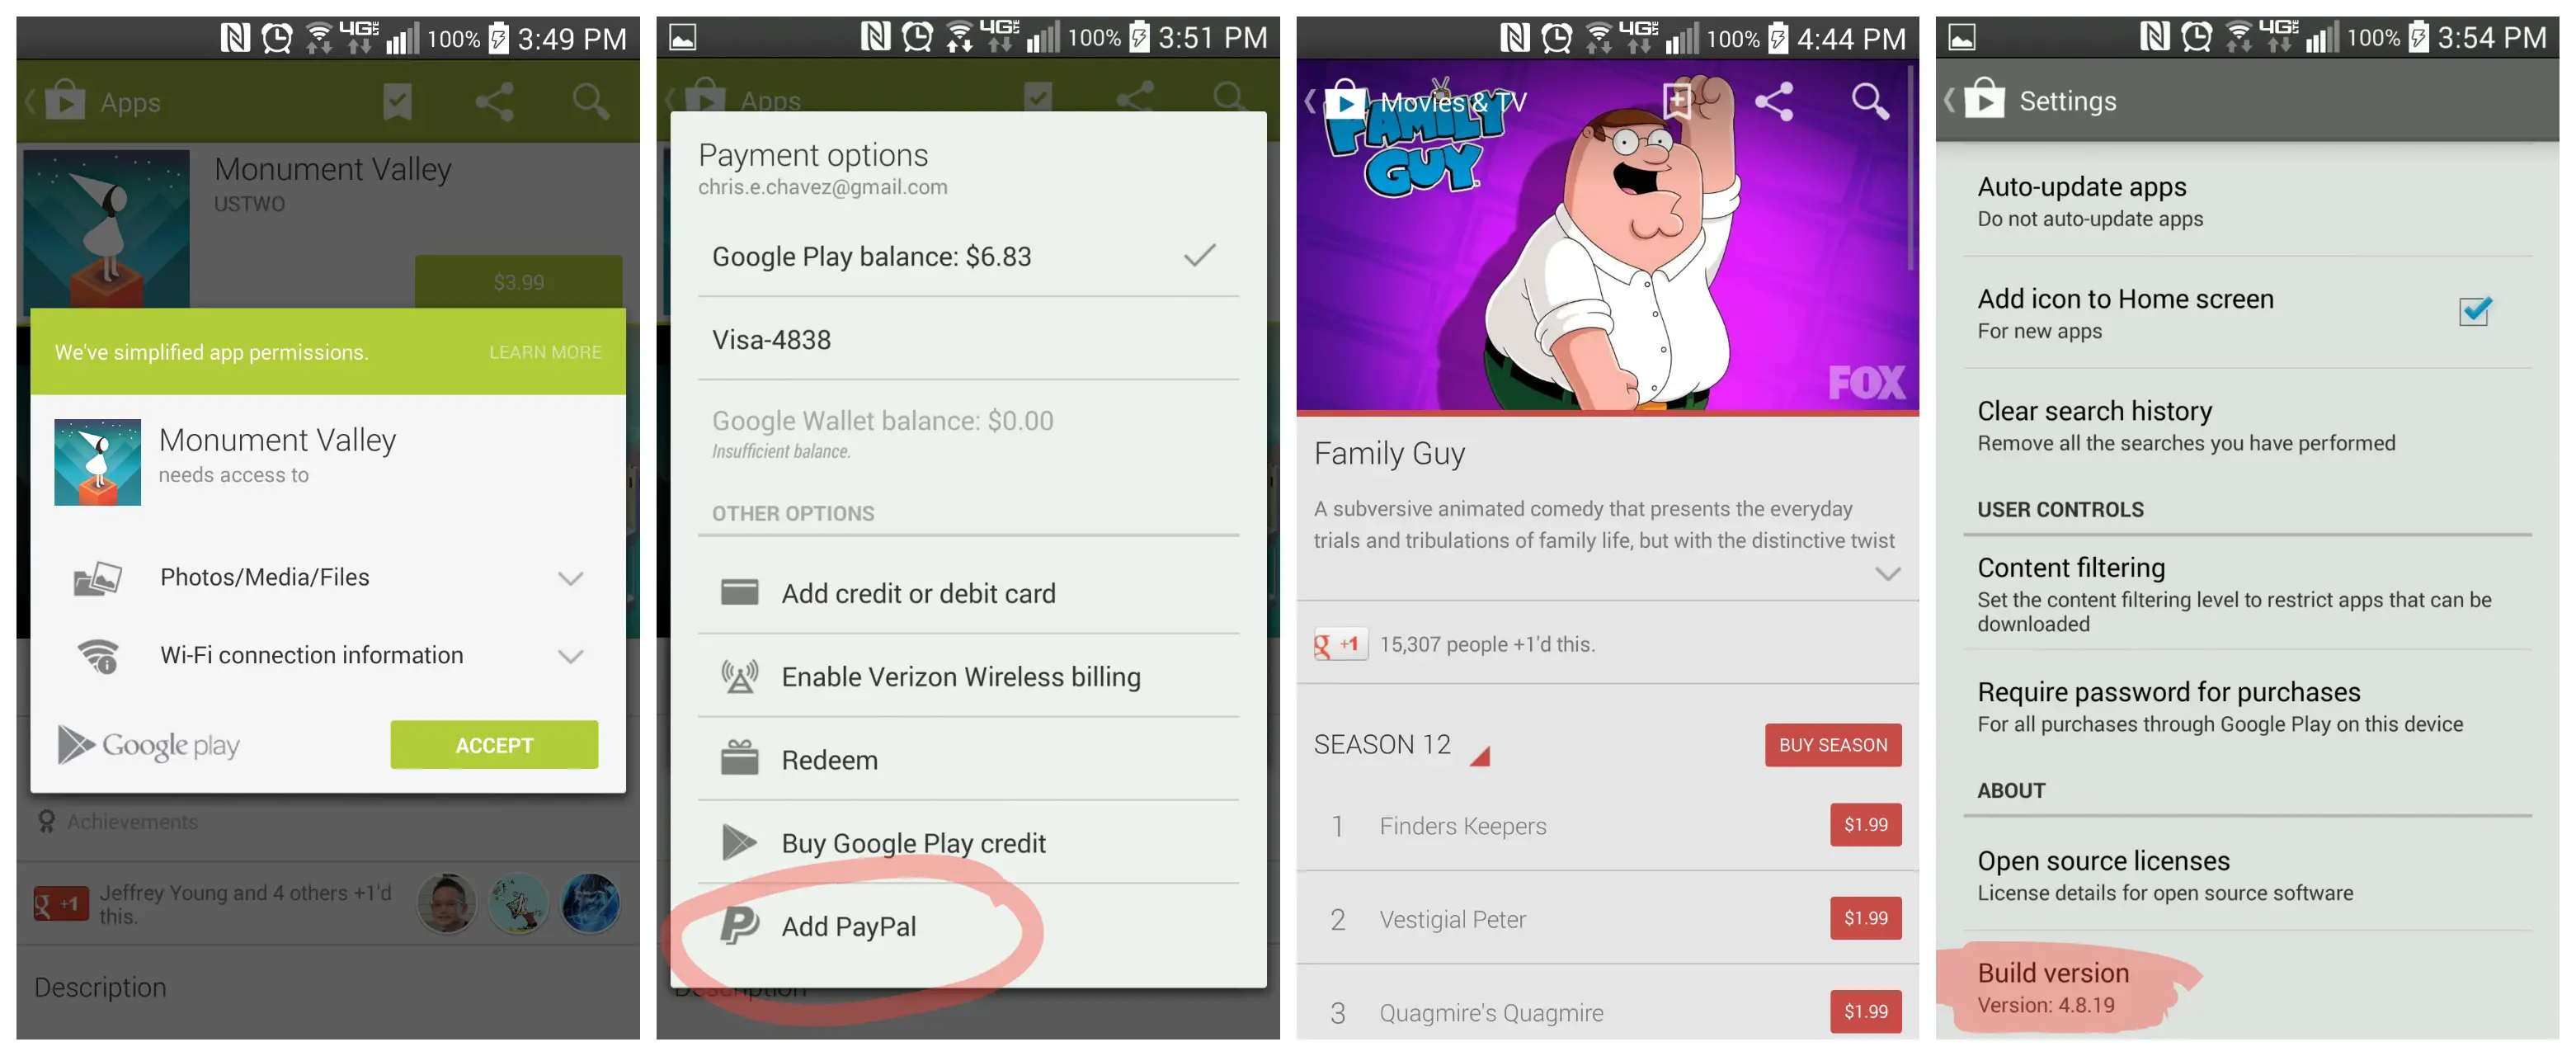 Скачай google play обновление. Страница приложения в Google Play. Google Play 4pda. Процесс оплаты Google Play. Google Play Family guy.